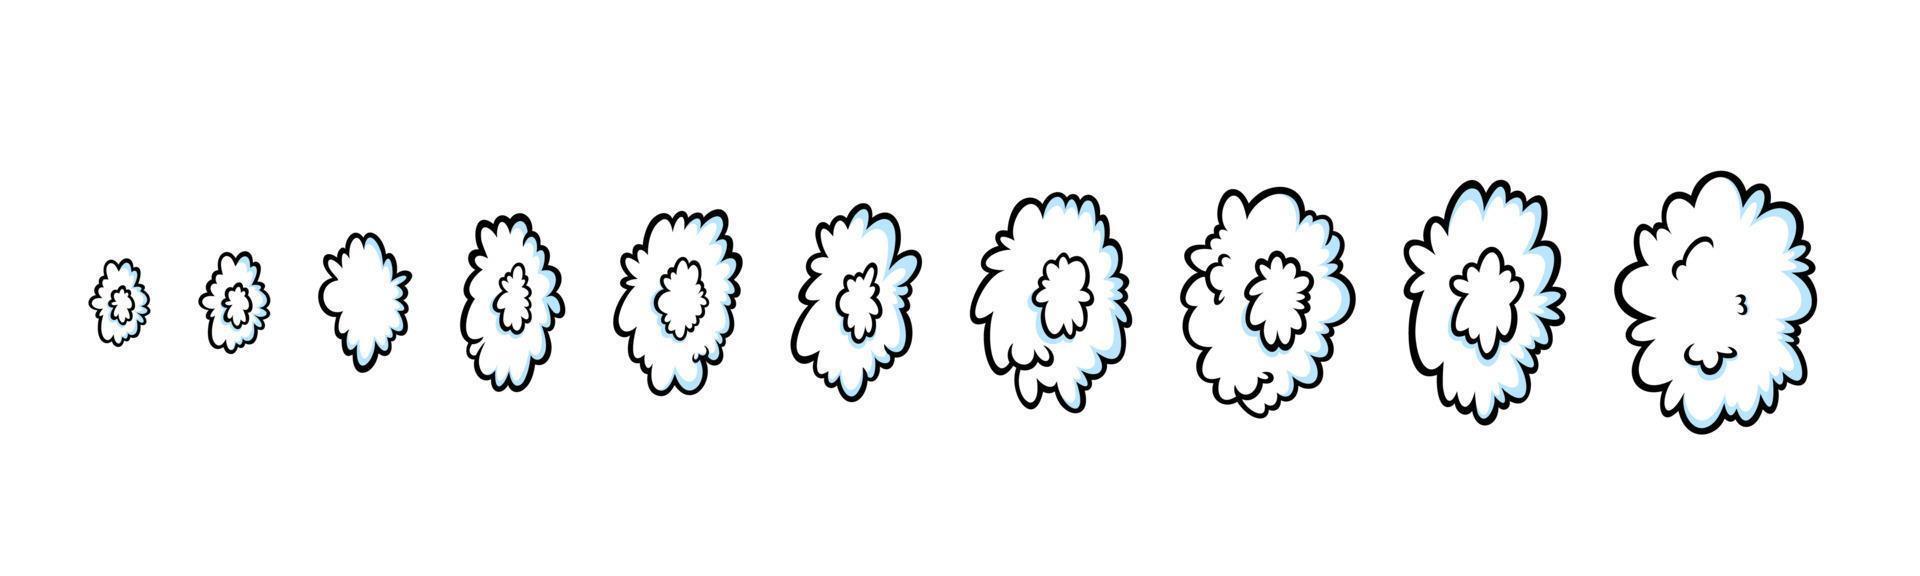 ånga ringar i komisk stil. växande rad av runda moln av ånga eller rök för cigarr, cigarett eller snabbt rörelse. vektor illustration